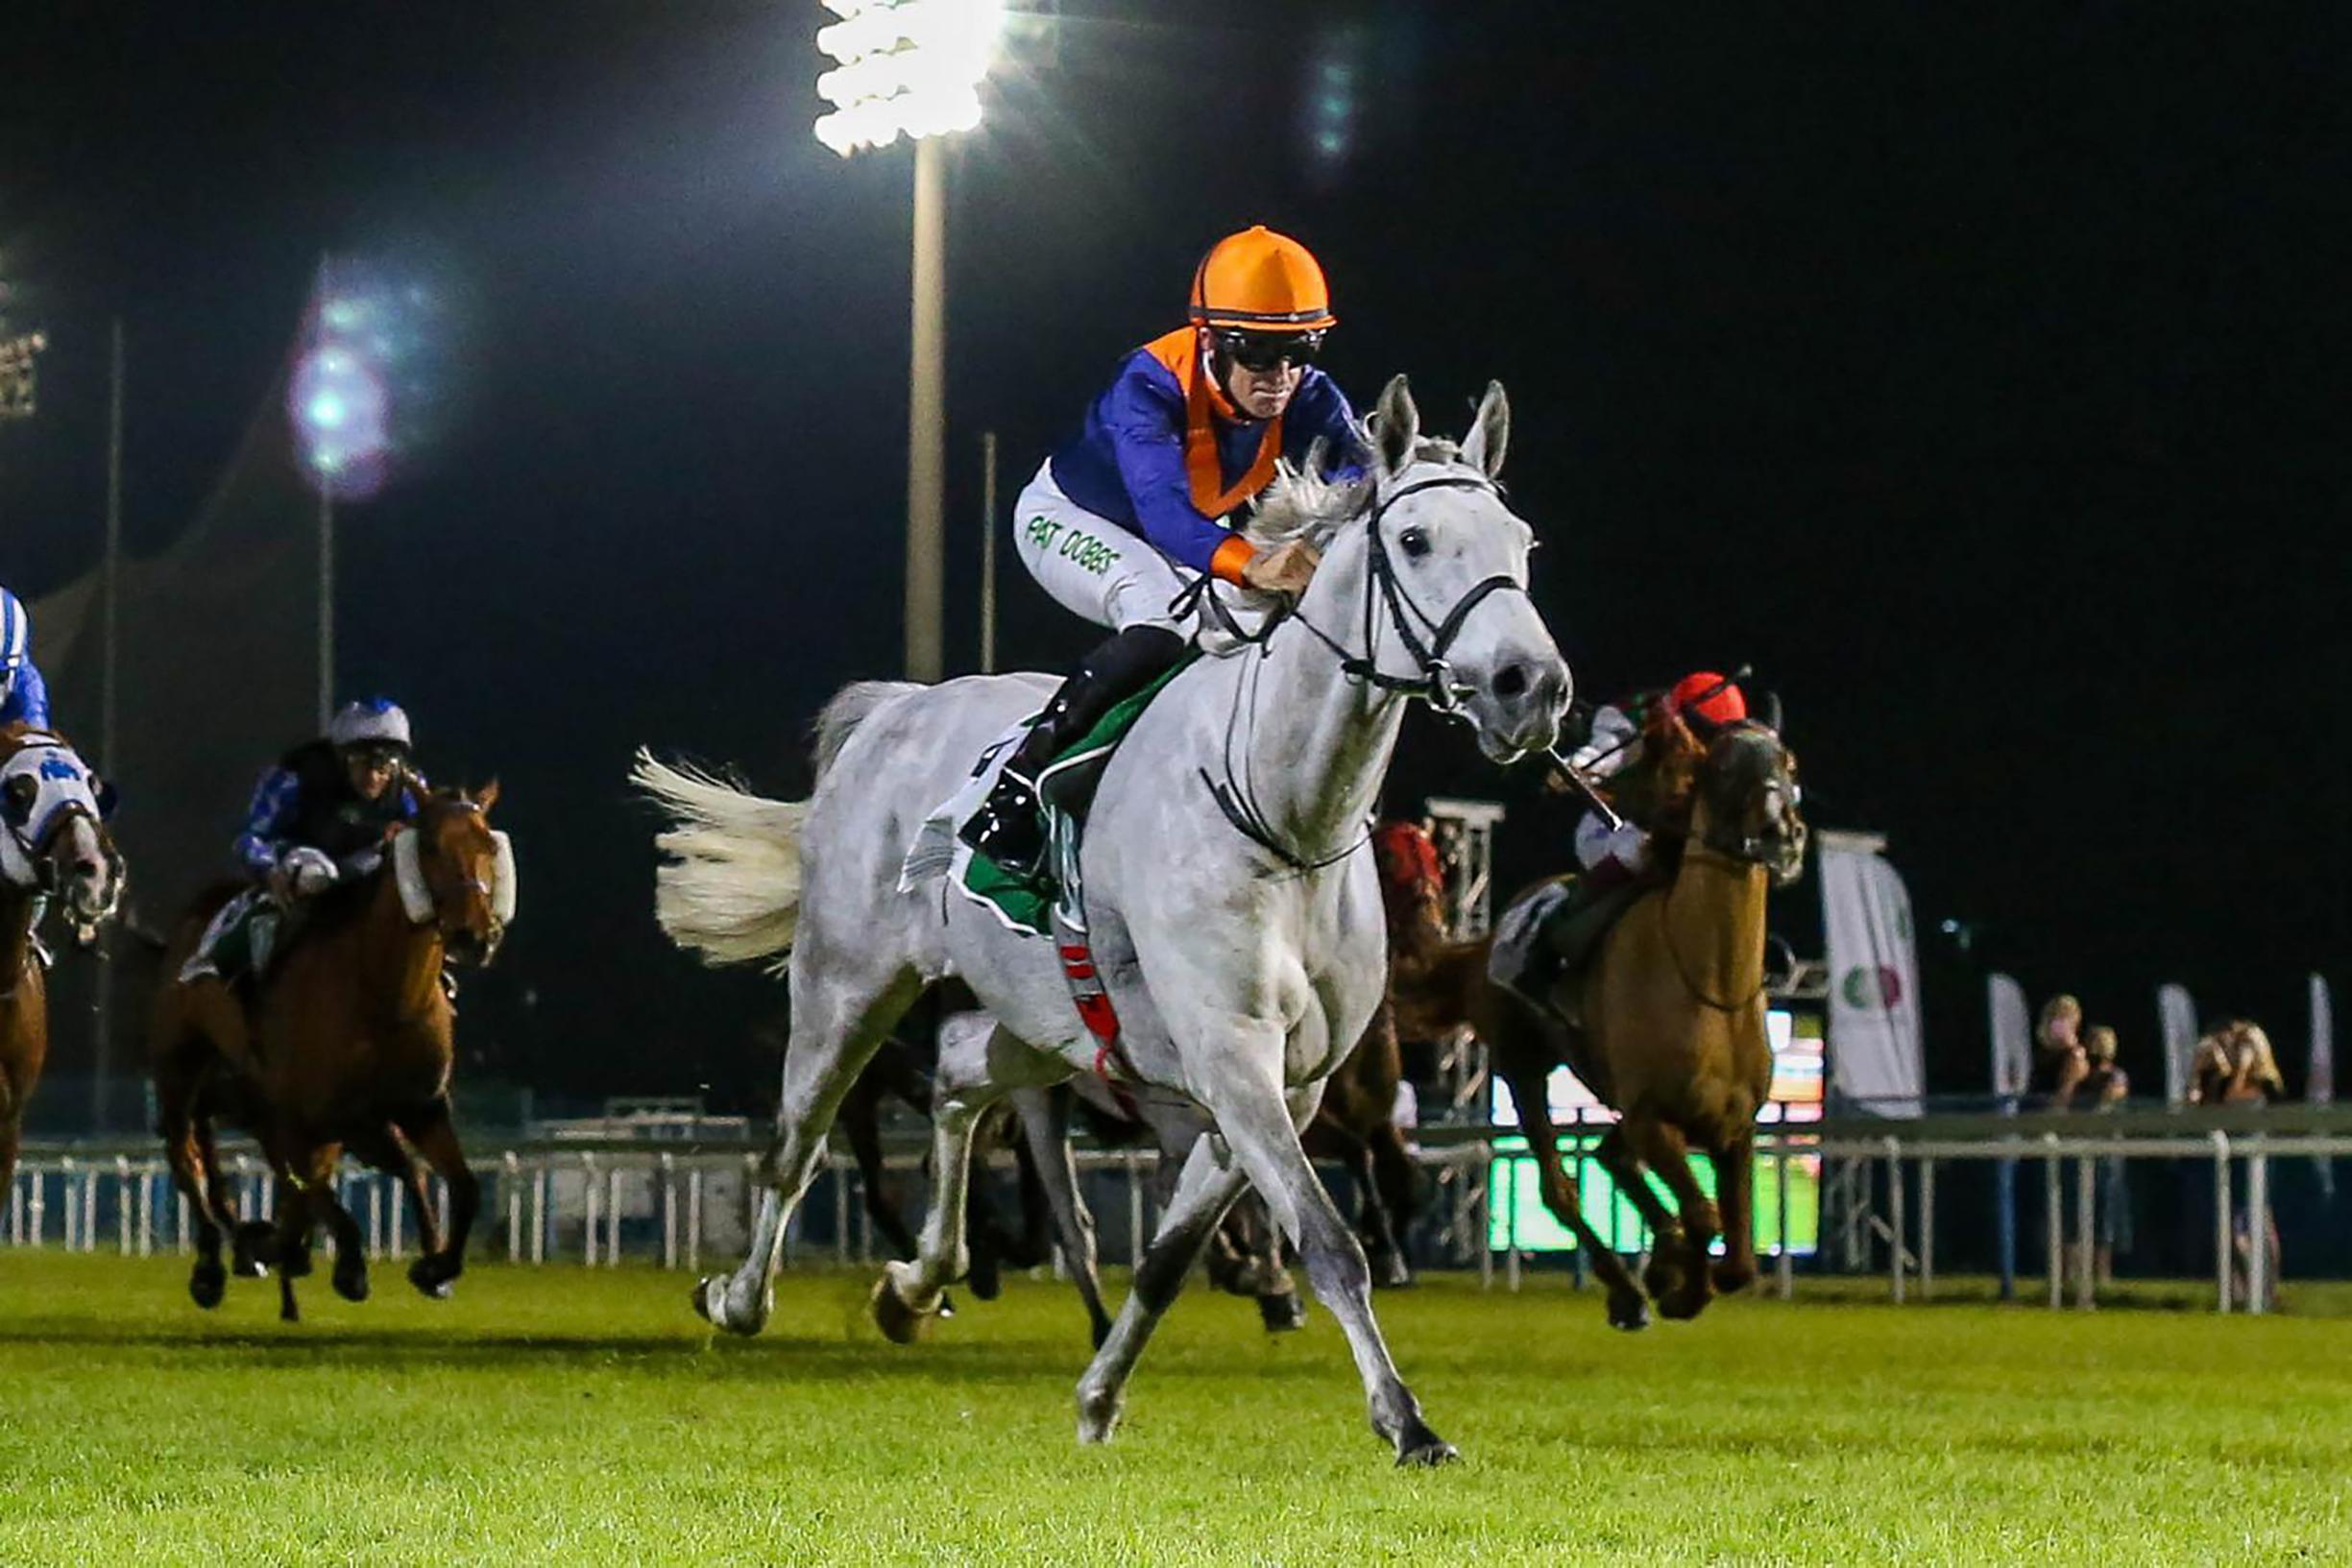 Renpaard uit Geel wint prestigieuze race in Abu Dhabi, goed voor 680.000 | Gazet van Antwerpen Mobile